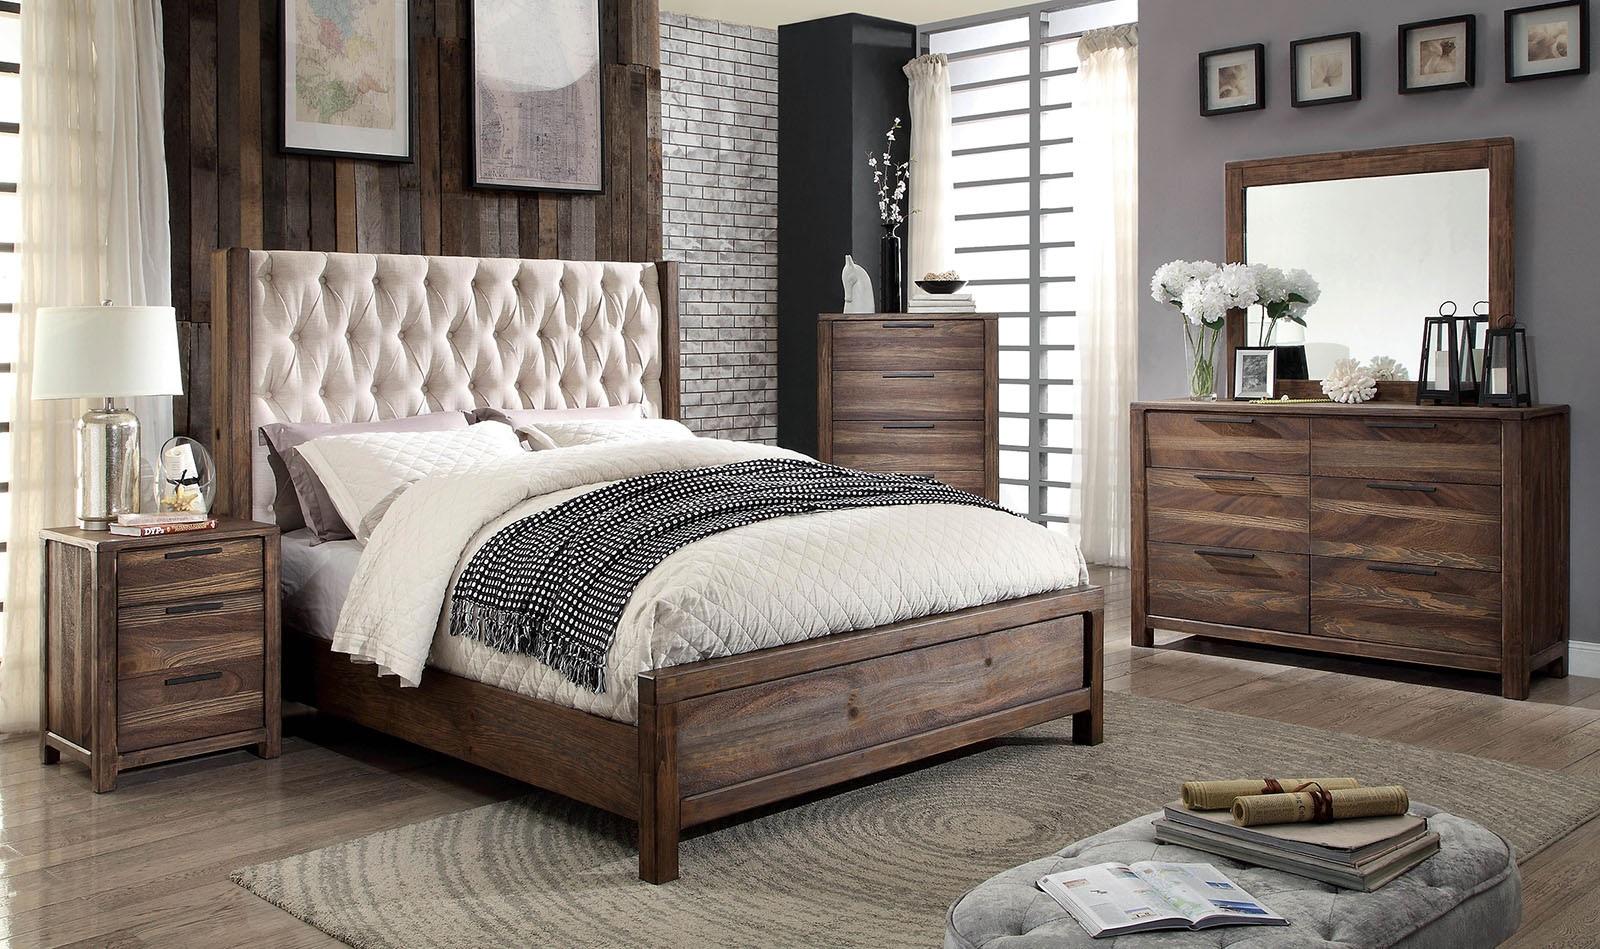 

    
CM7577-Q-3PC Rustic Natural & Beige Solid Wood Queen Bedroom Set 3pcs Furniture of America CM7577-Q Hutchinson
